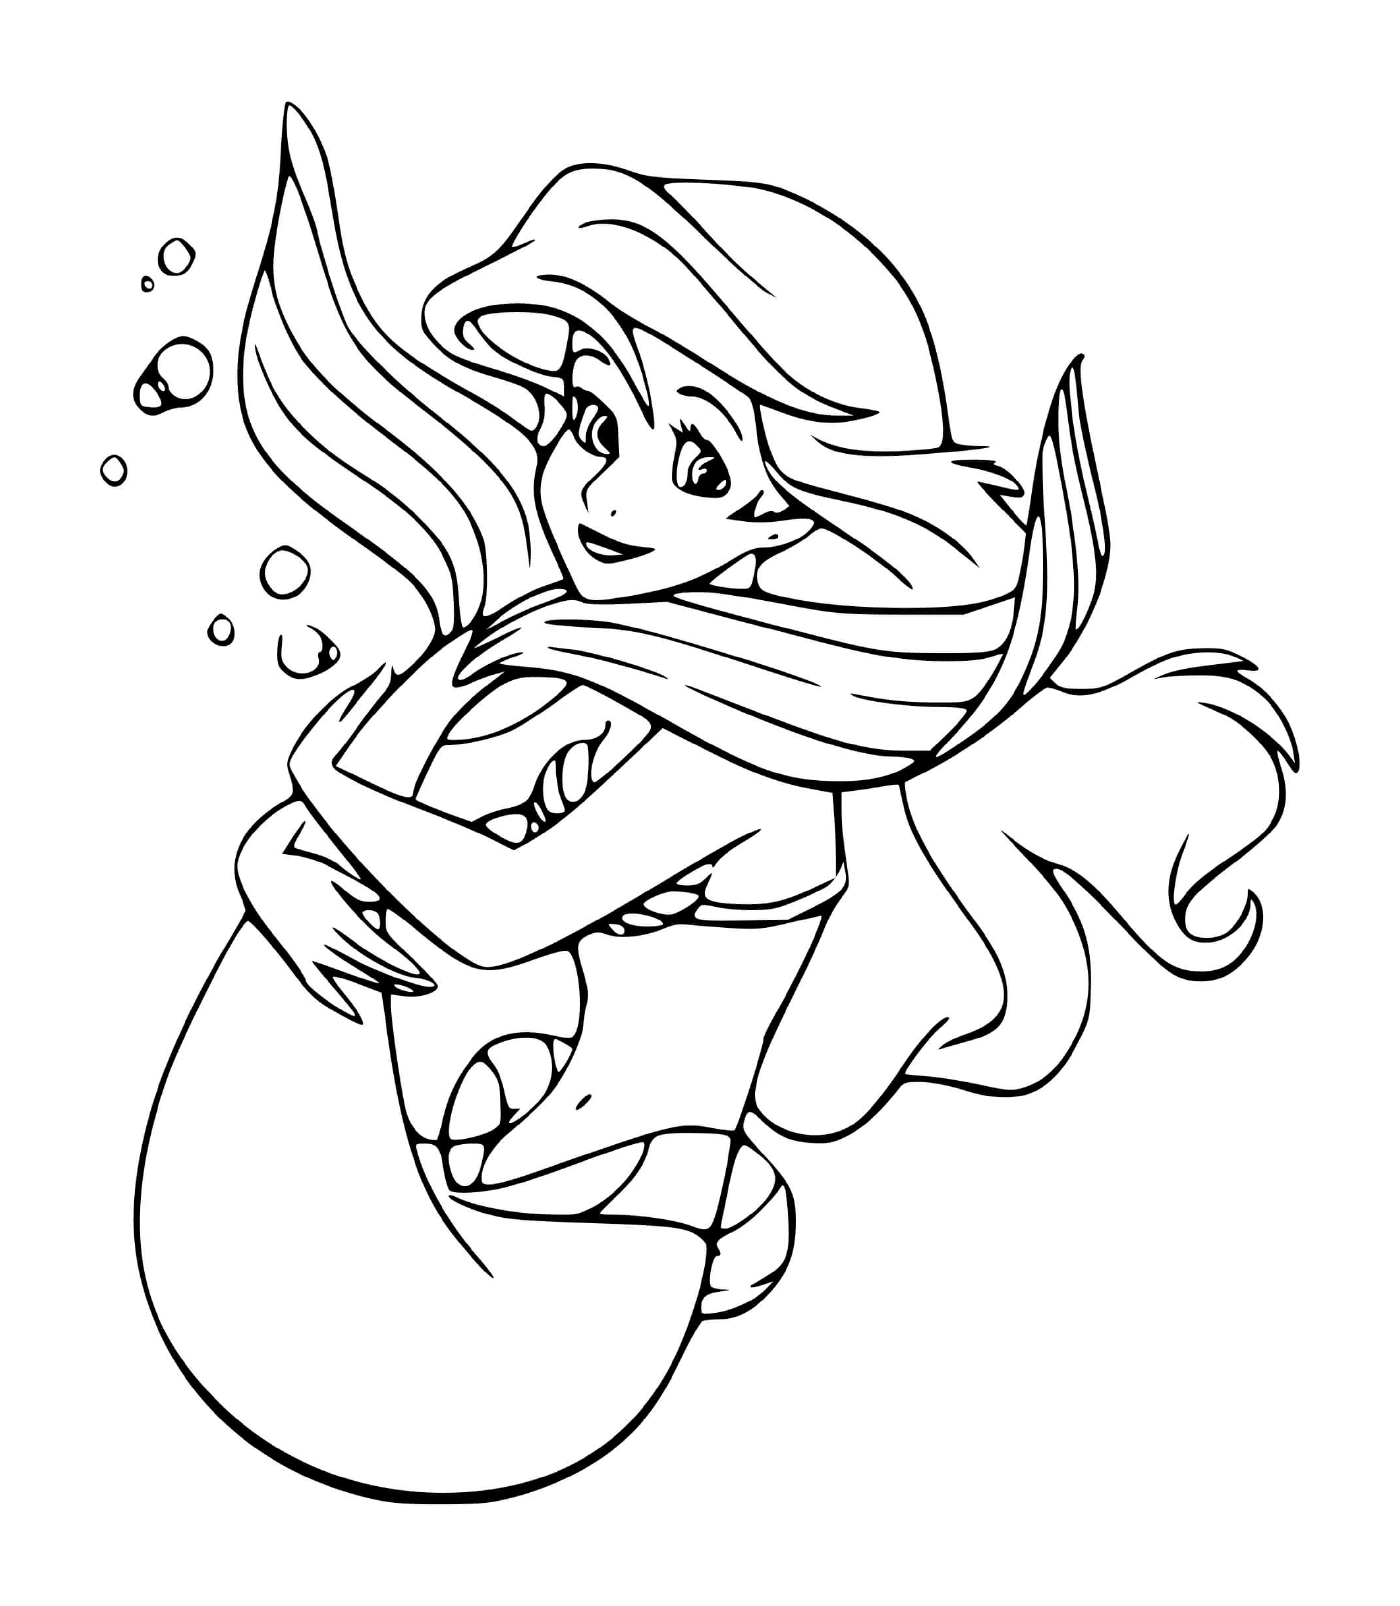  Ariel, uma sereia aventureira e curiosa do mundo 